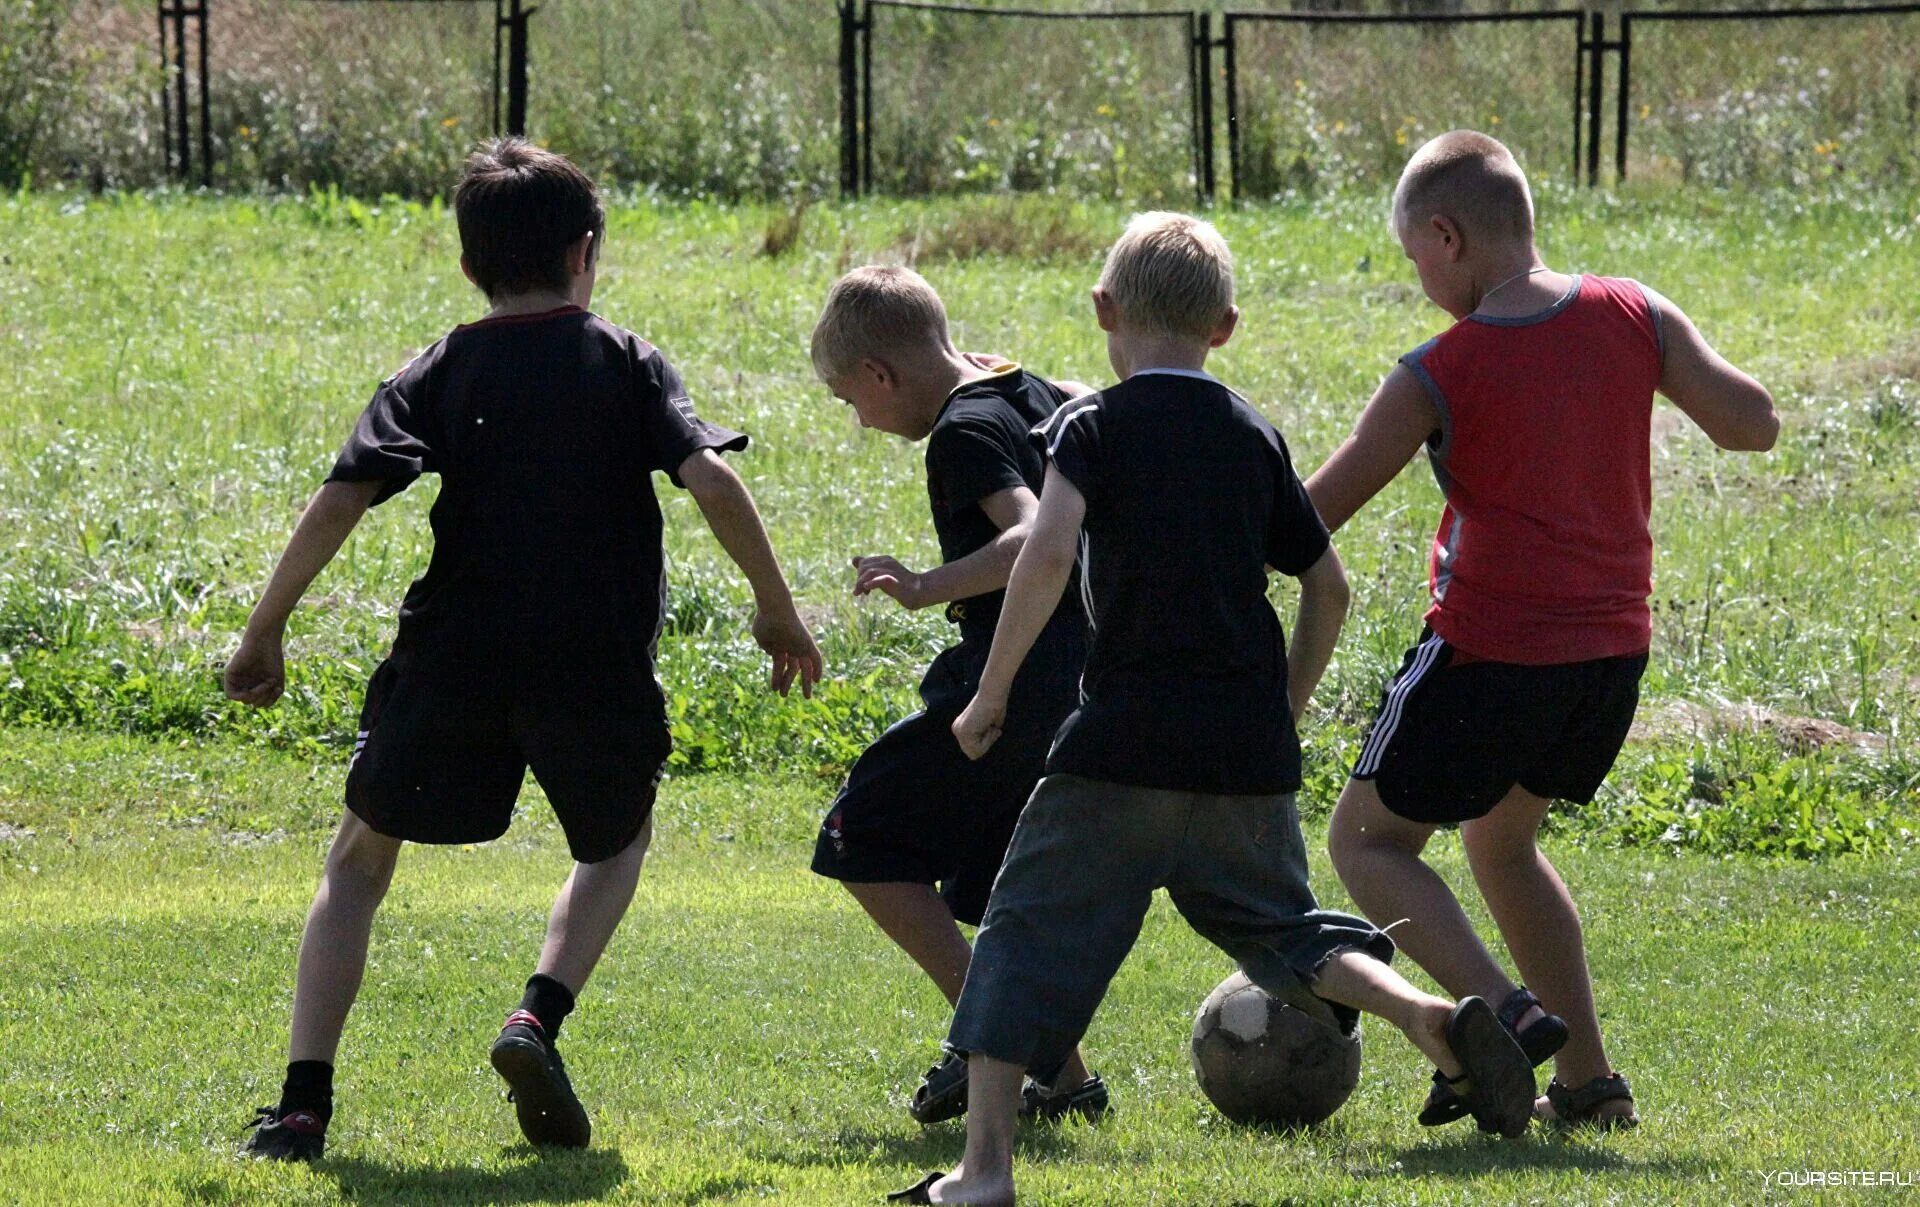 Ребята играют на улице. Дети играют в футбол. Дети во дворе. Футбол во дворе. Дети играющие в футбол во дворе.